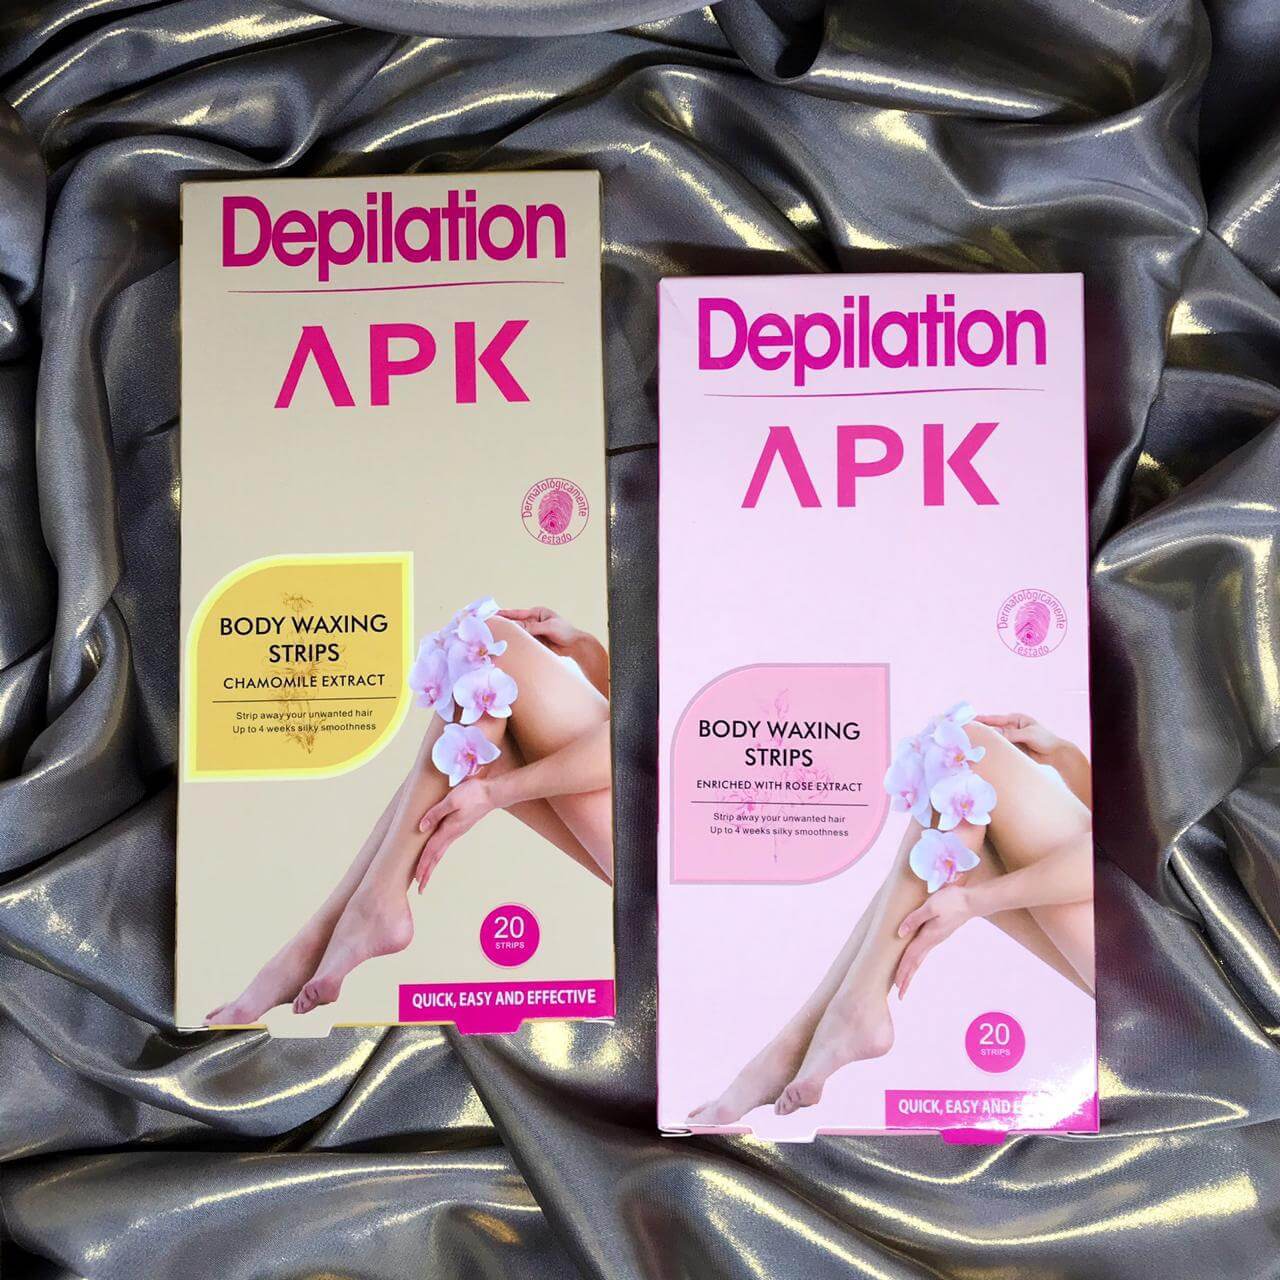 APK Depilation Body Waxing Strips online in Pakistan